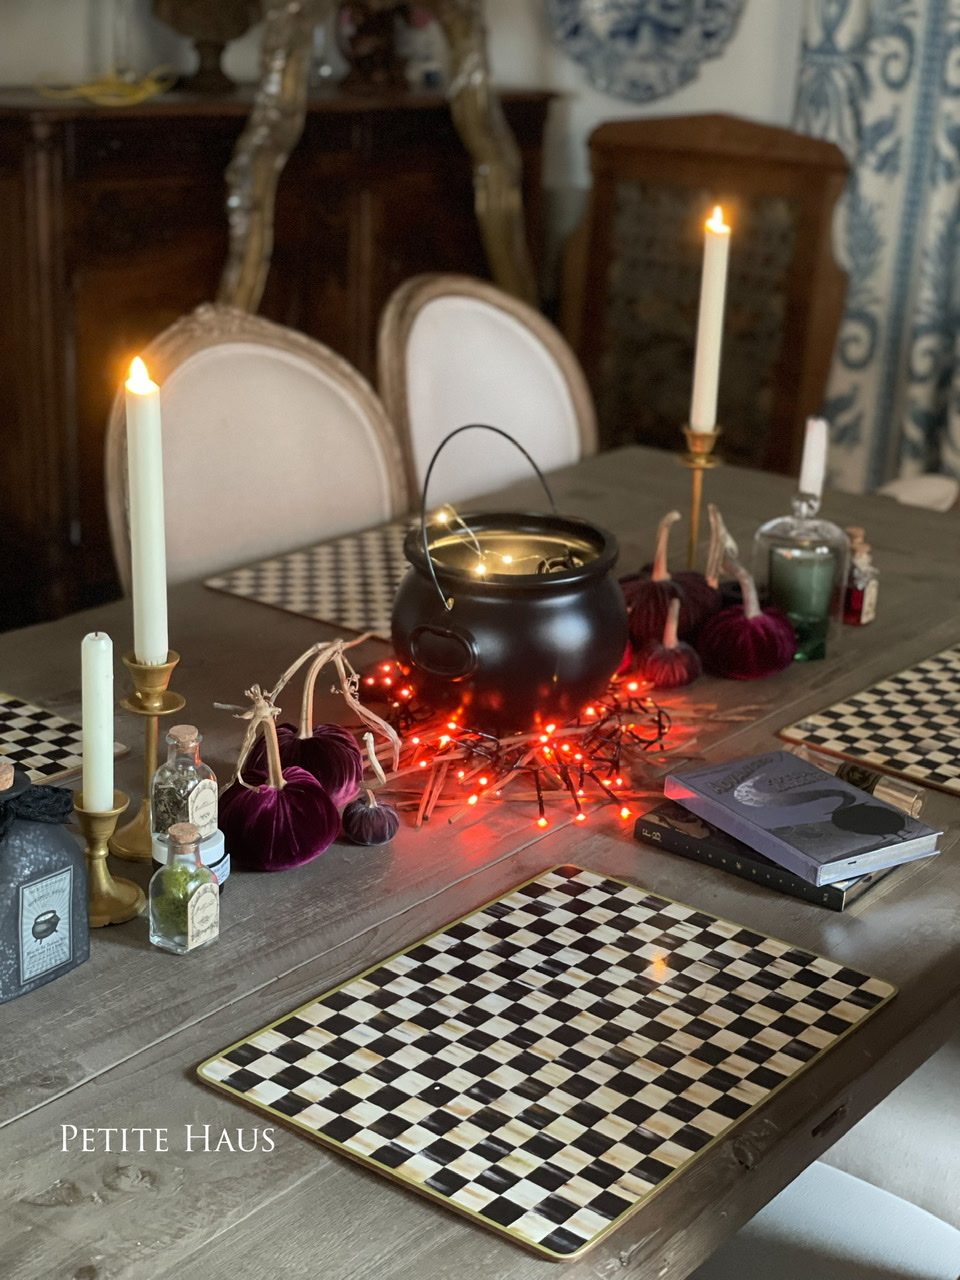 Halloween Table with a Cauldron